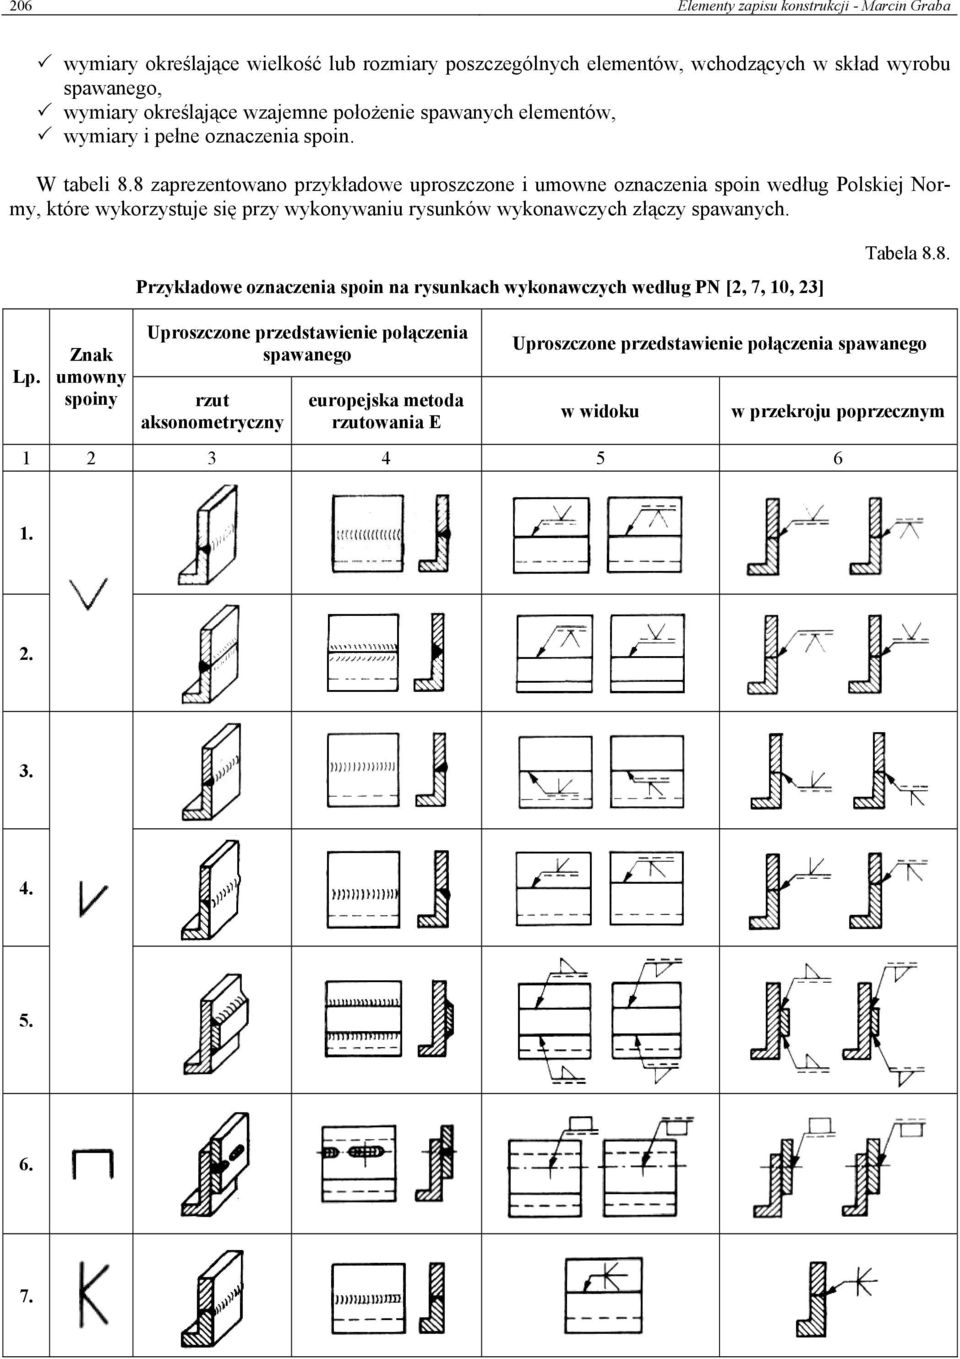 8 zaprezentowano przykładowe uproszczone i umowne oznaczenia spoin według Polskiej Normy, które wykorzystuje się przy wykonywaniu rysunków wykonawczych złączy spawanych.